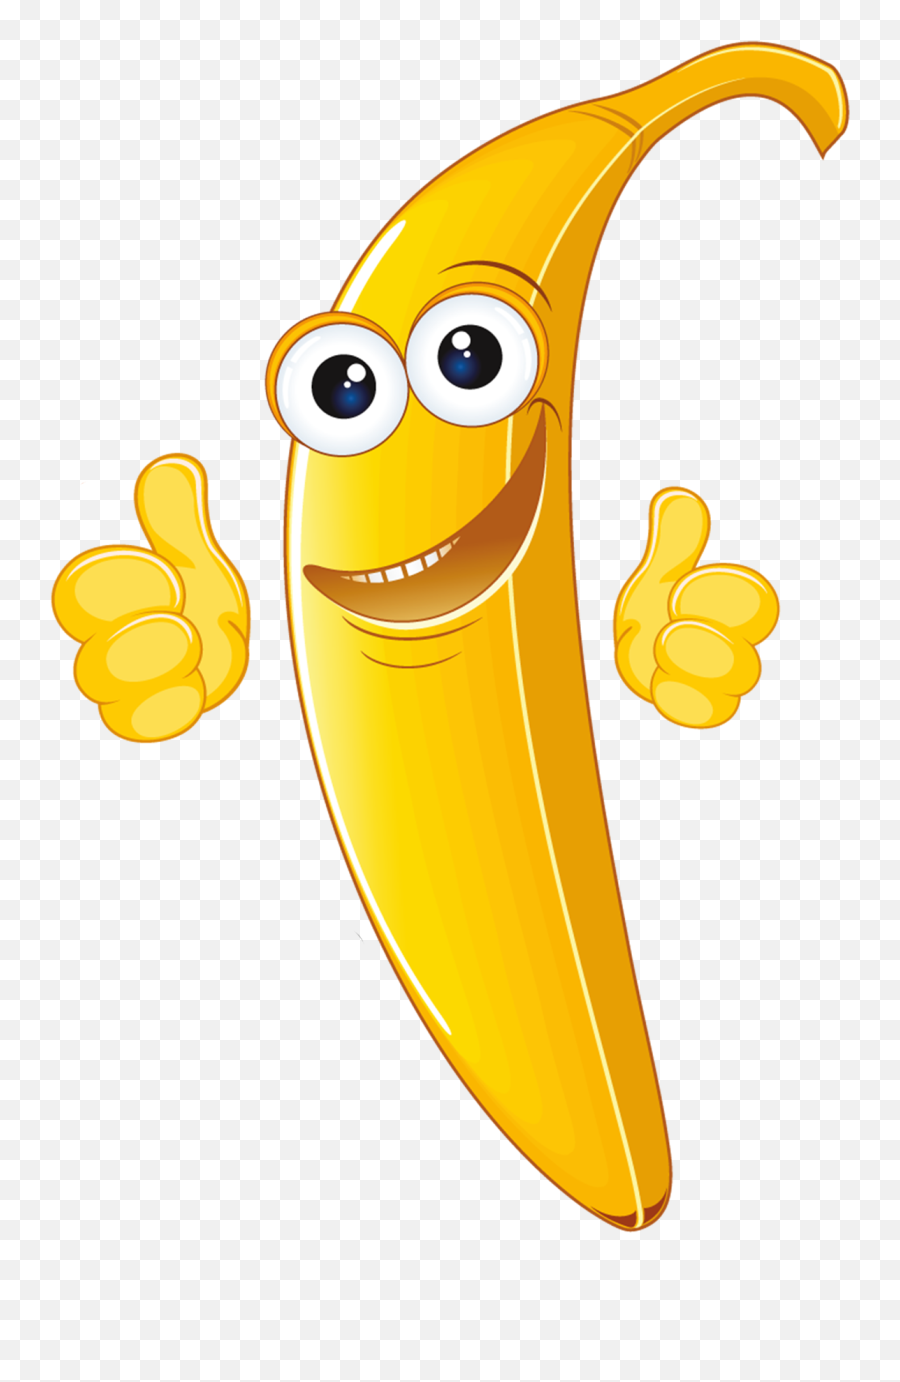 Banana Cartoon Free Download Image - Banana Smiley Png Emoji,Banana Emoticon